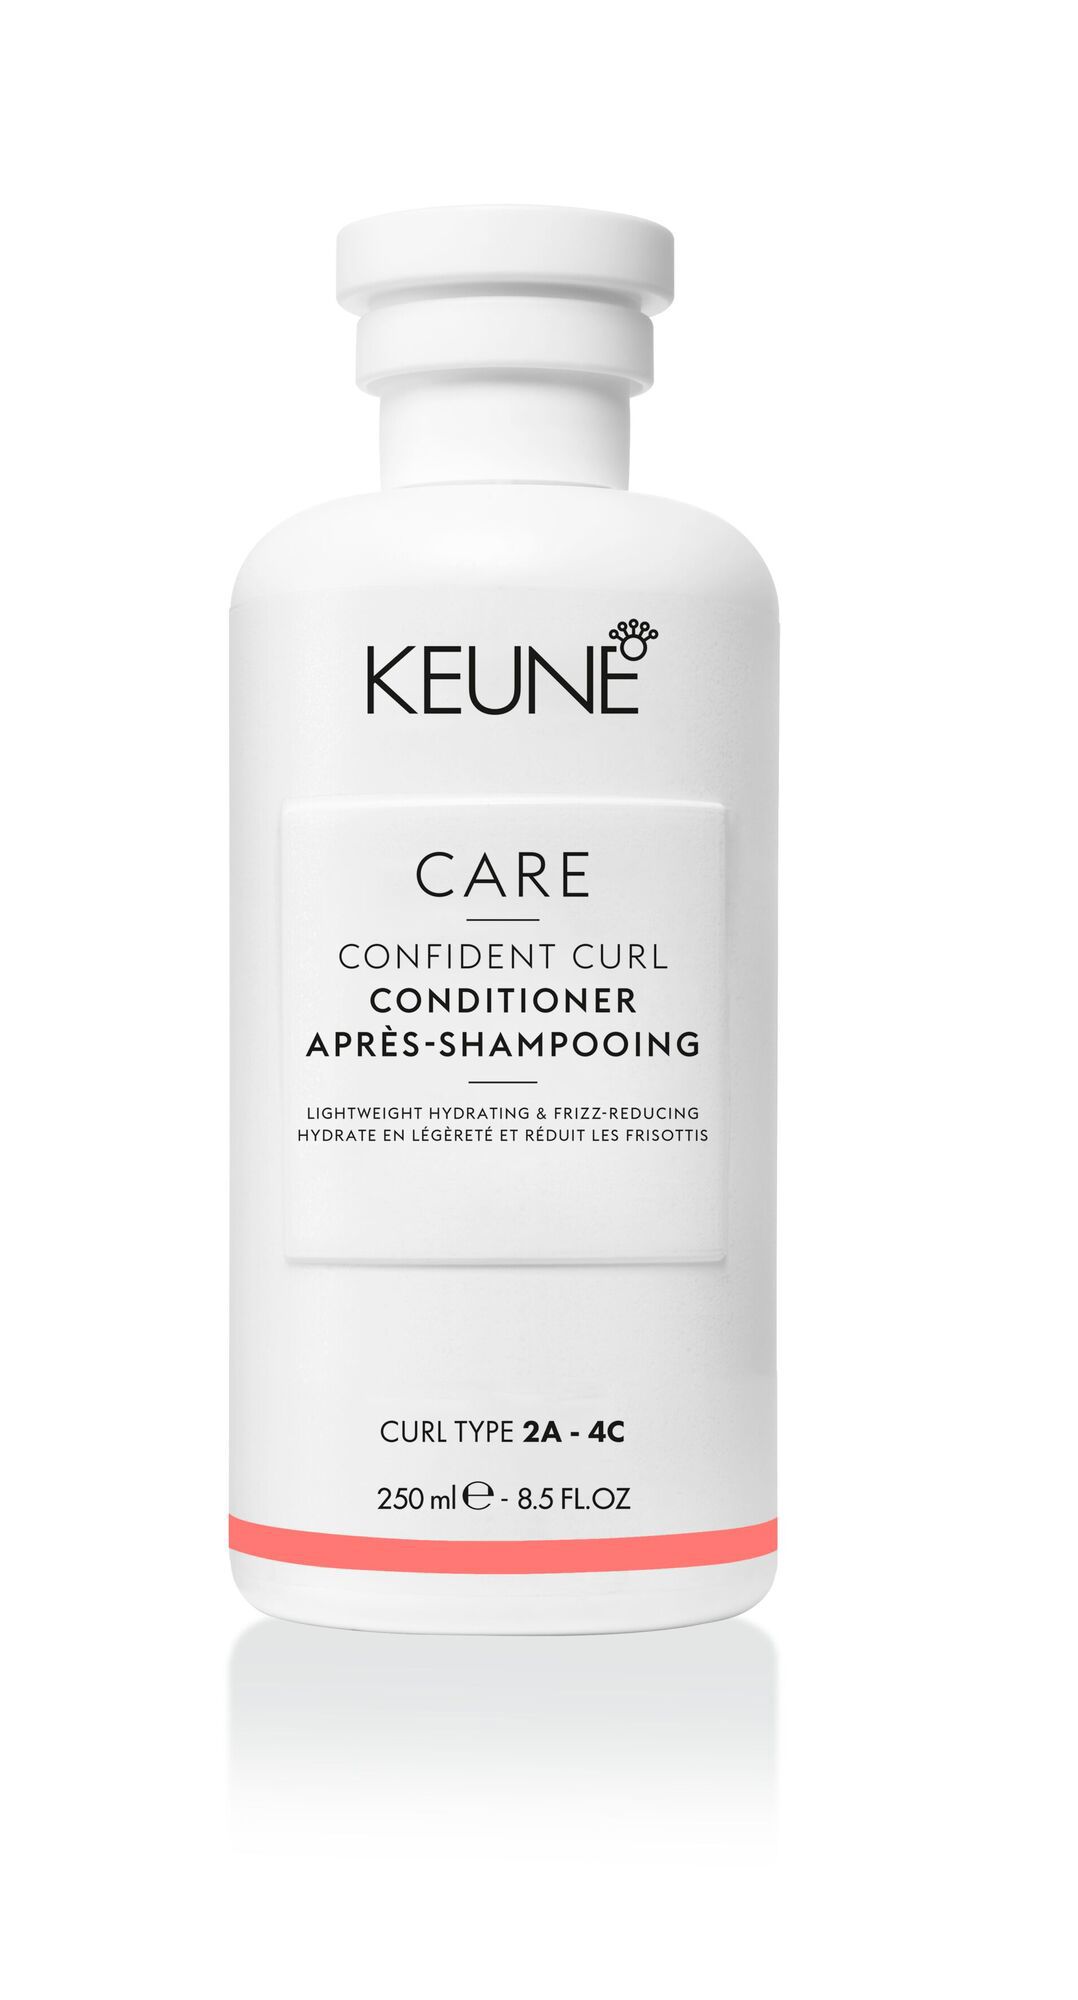 CARE Confident Curl Conditioner